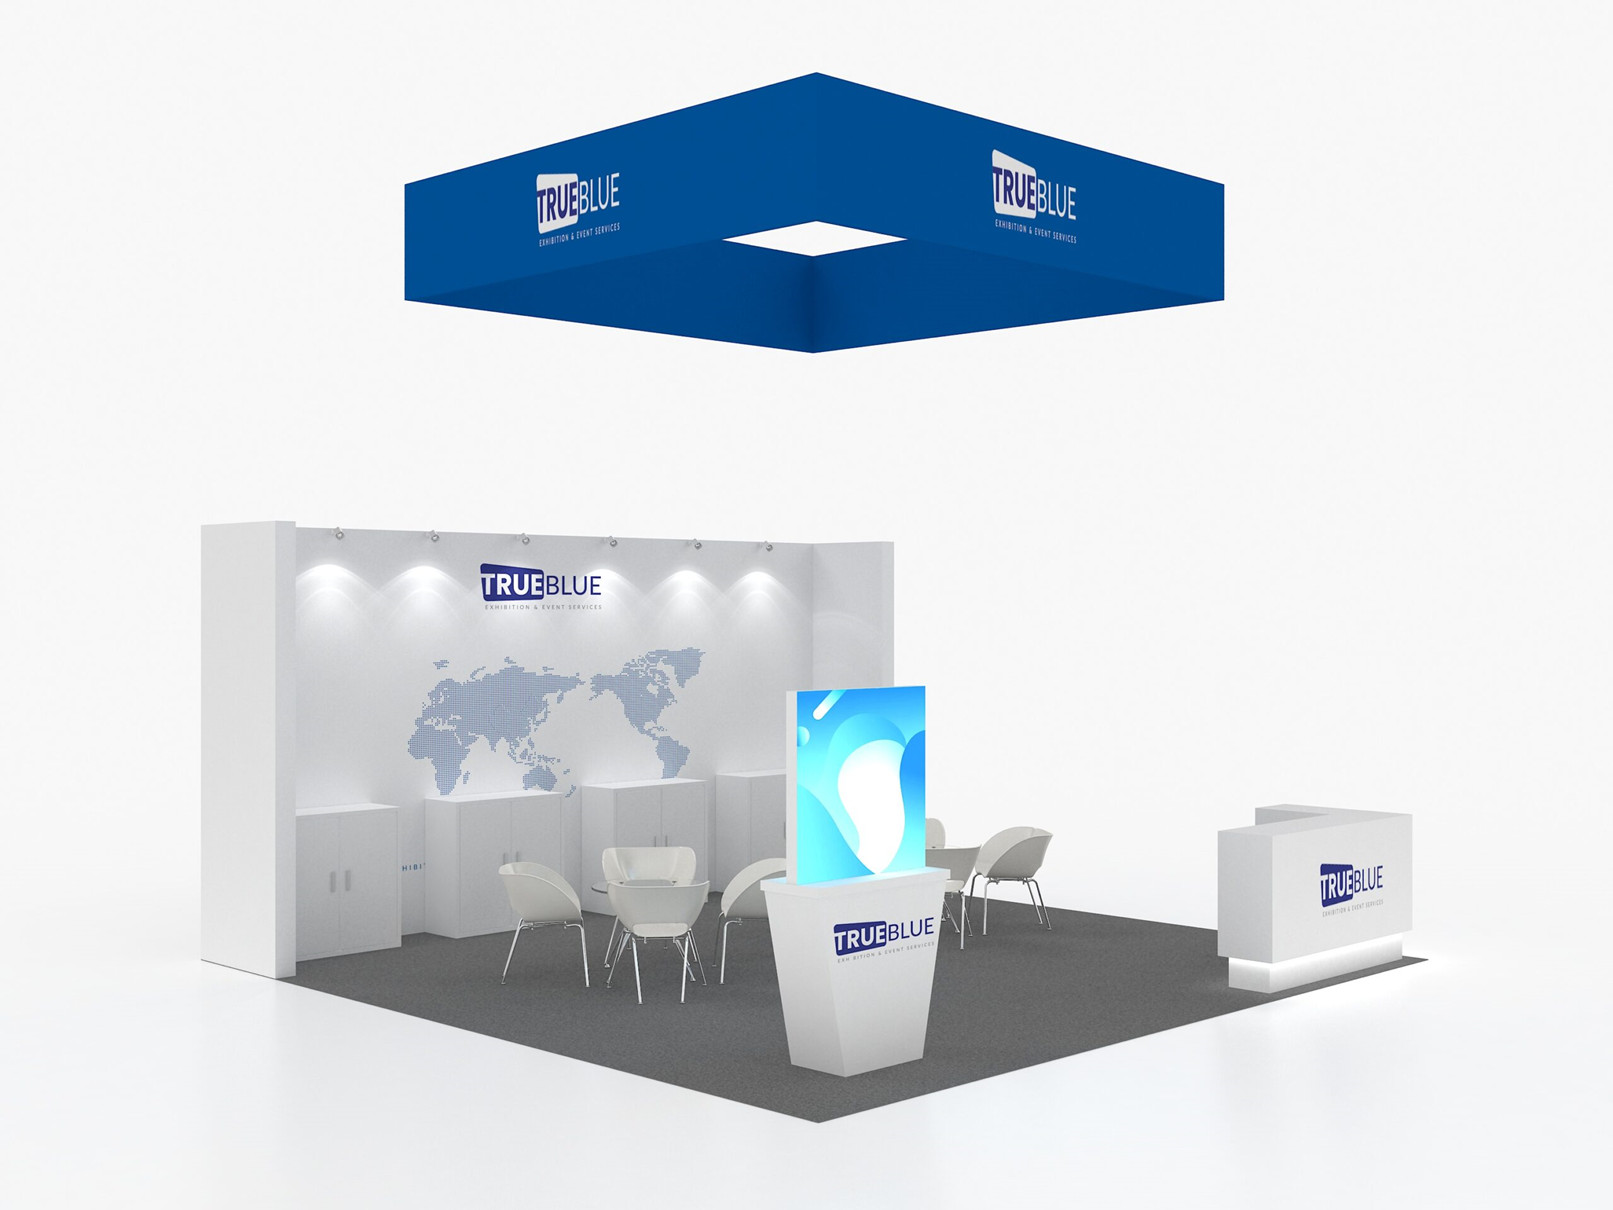 E3 20′ x 20′ Custom Trade Show Booth Design